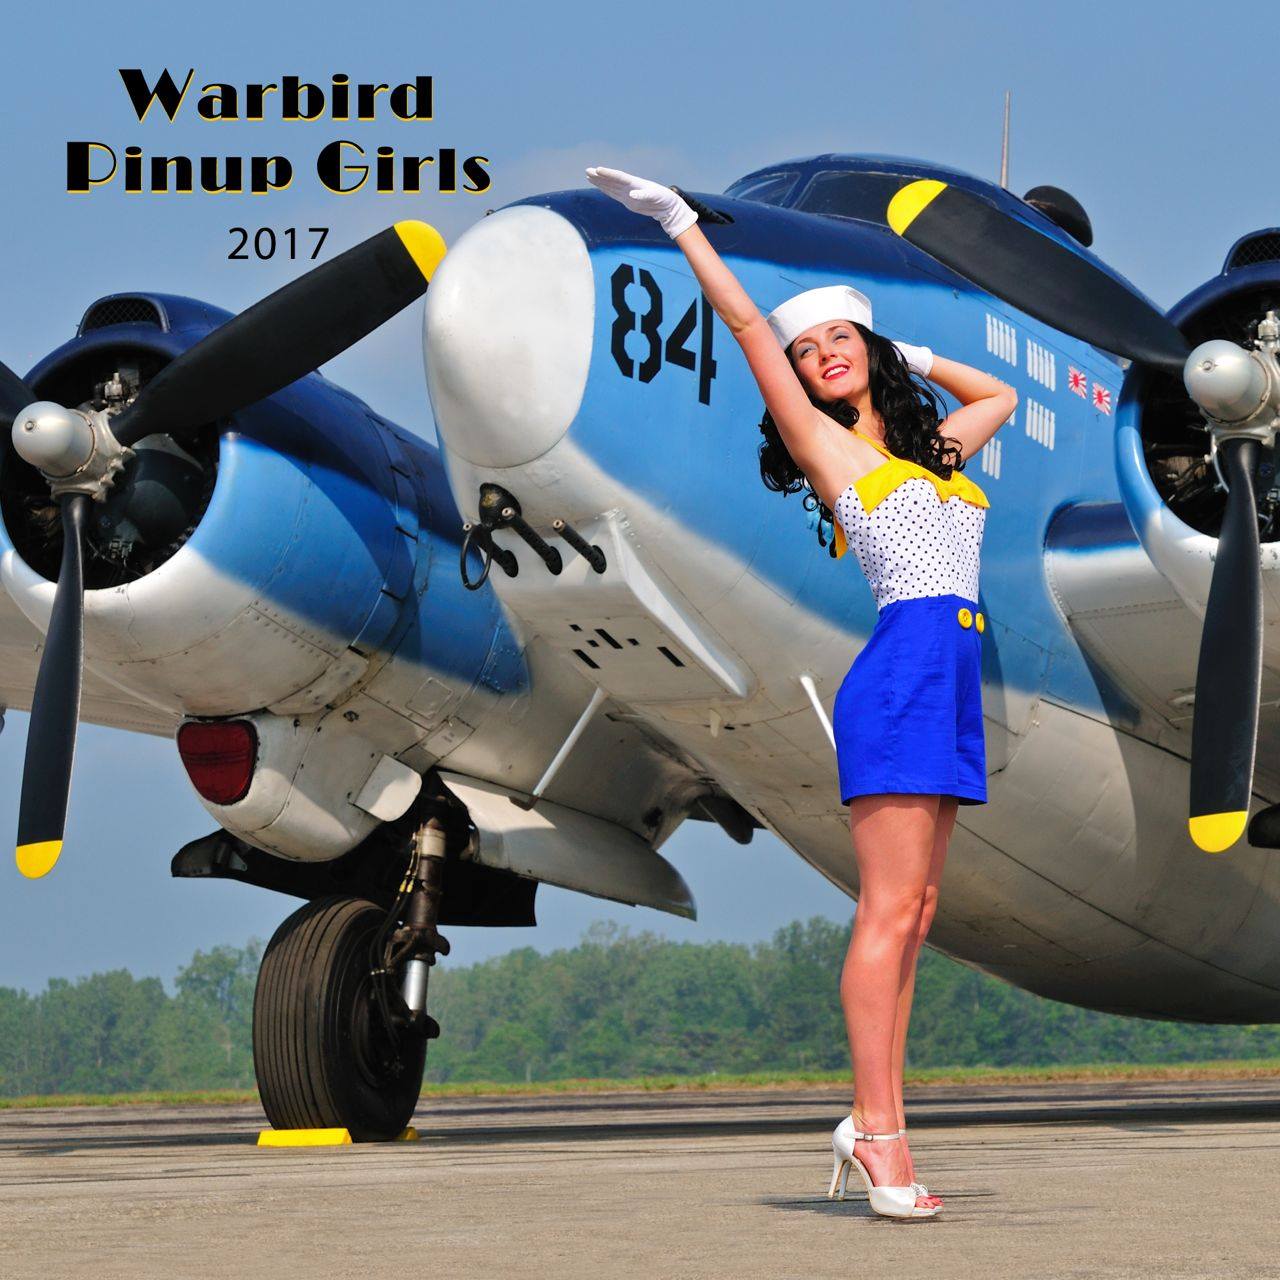 Warbird Pin Up Girl Calendar 2025 - Angy Mahala